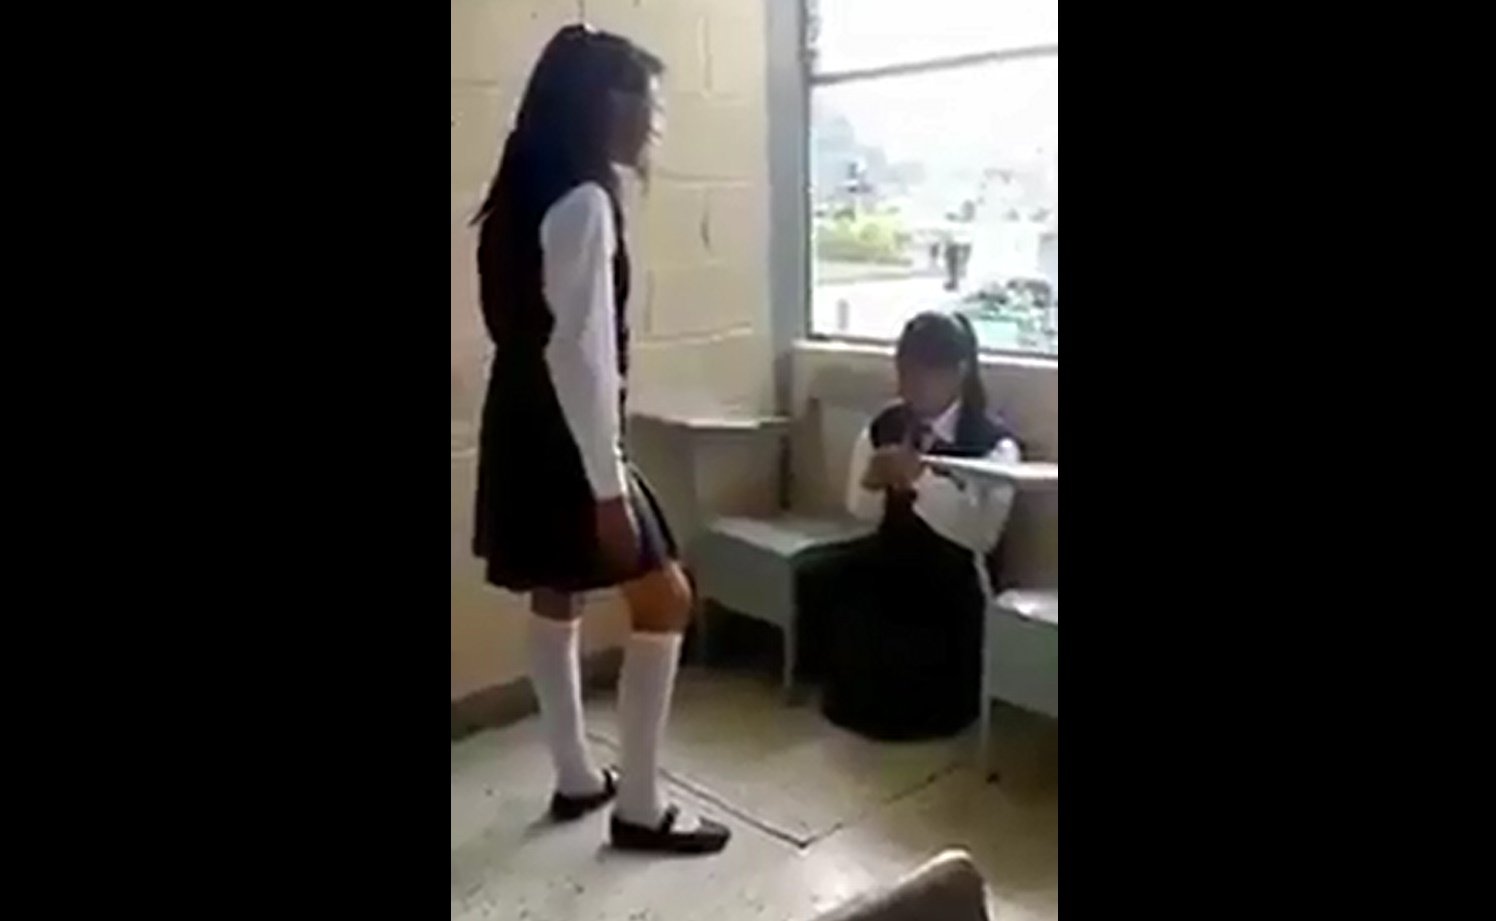 Gracias a este video detectaron caso de bullying en secundaria de Puebla